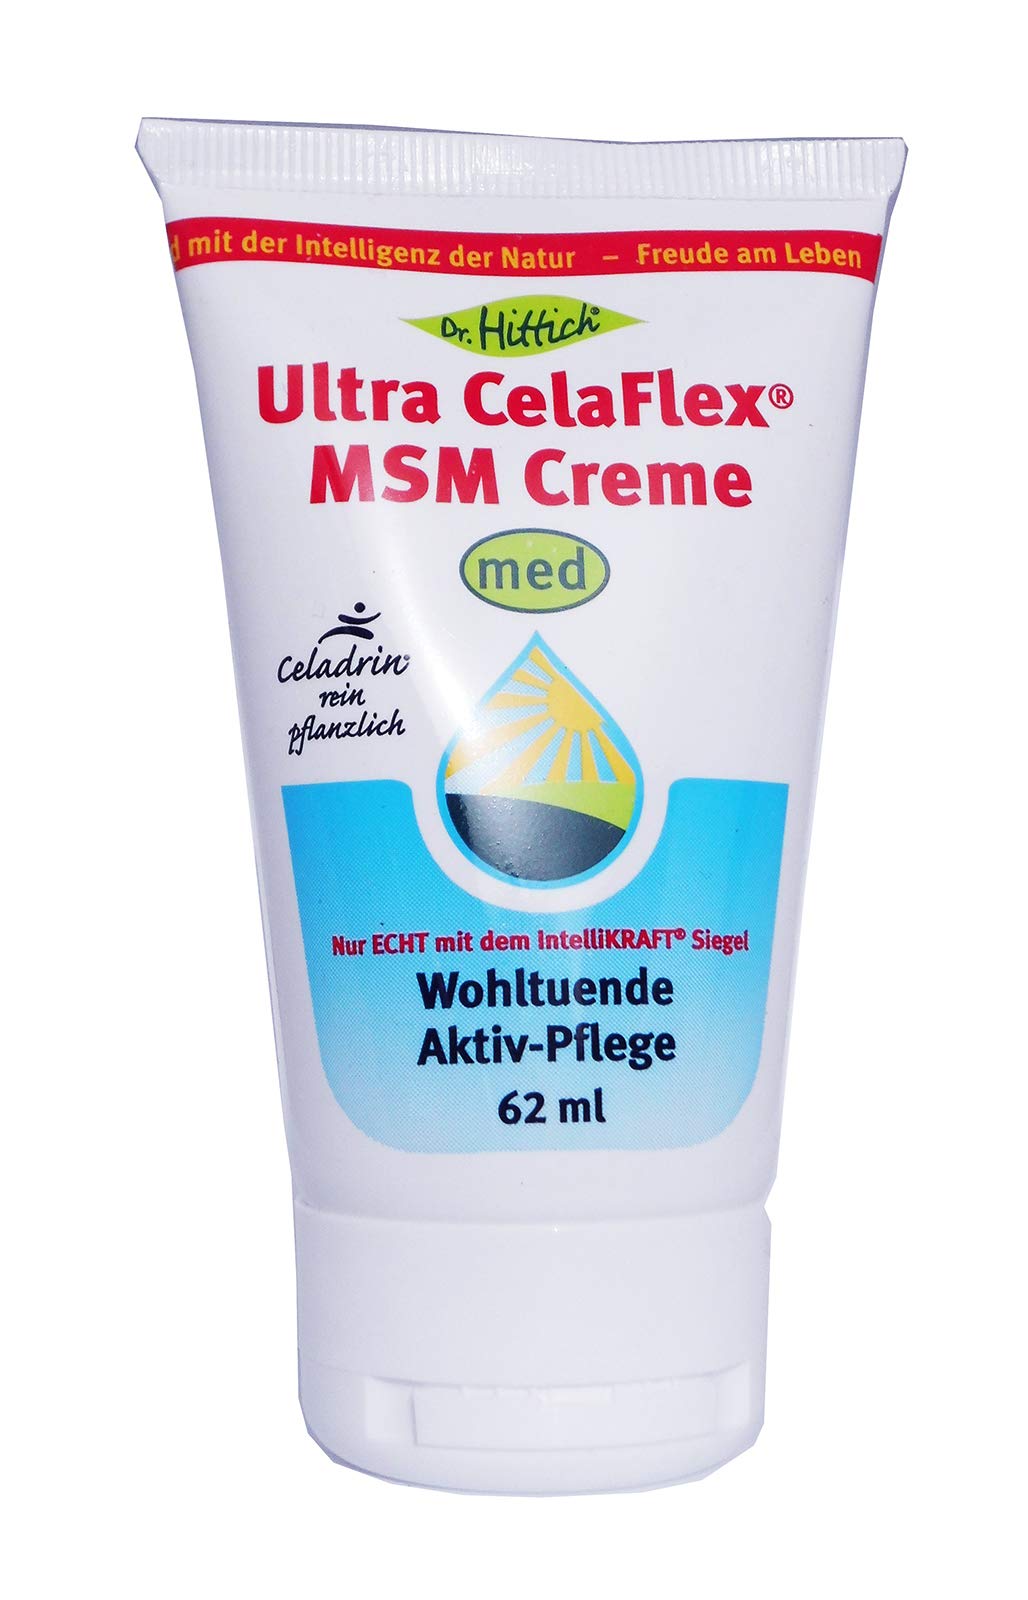 Ultra CelaFlex® MSM Creme - 62 ml Celadrin-Creme - Fördert die Durchblutung gegen Gelenkbeschwerden und Muskelbeschwerden - Von Dr. Hittich